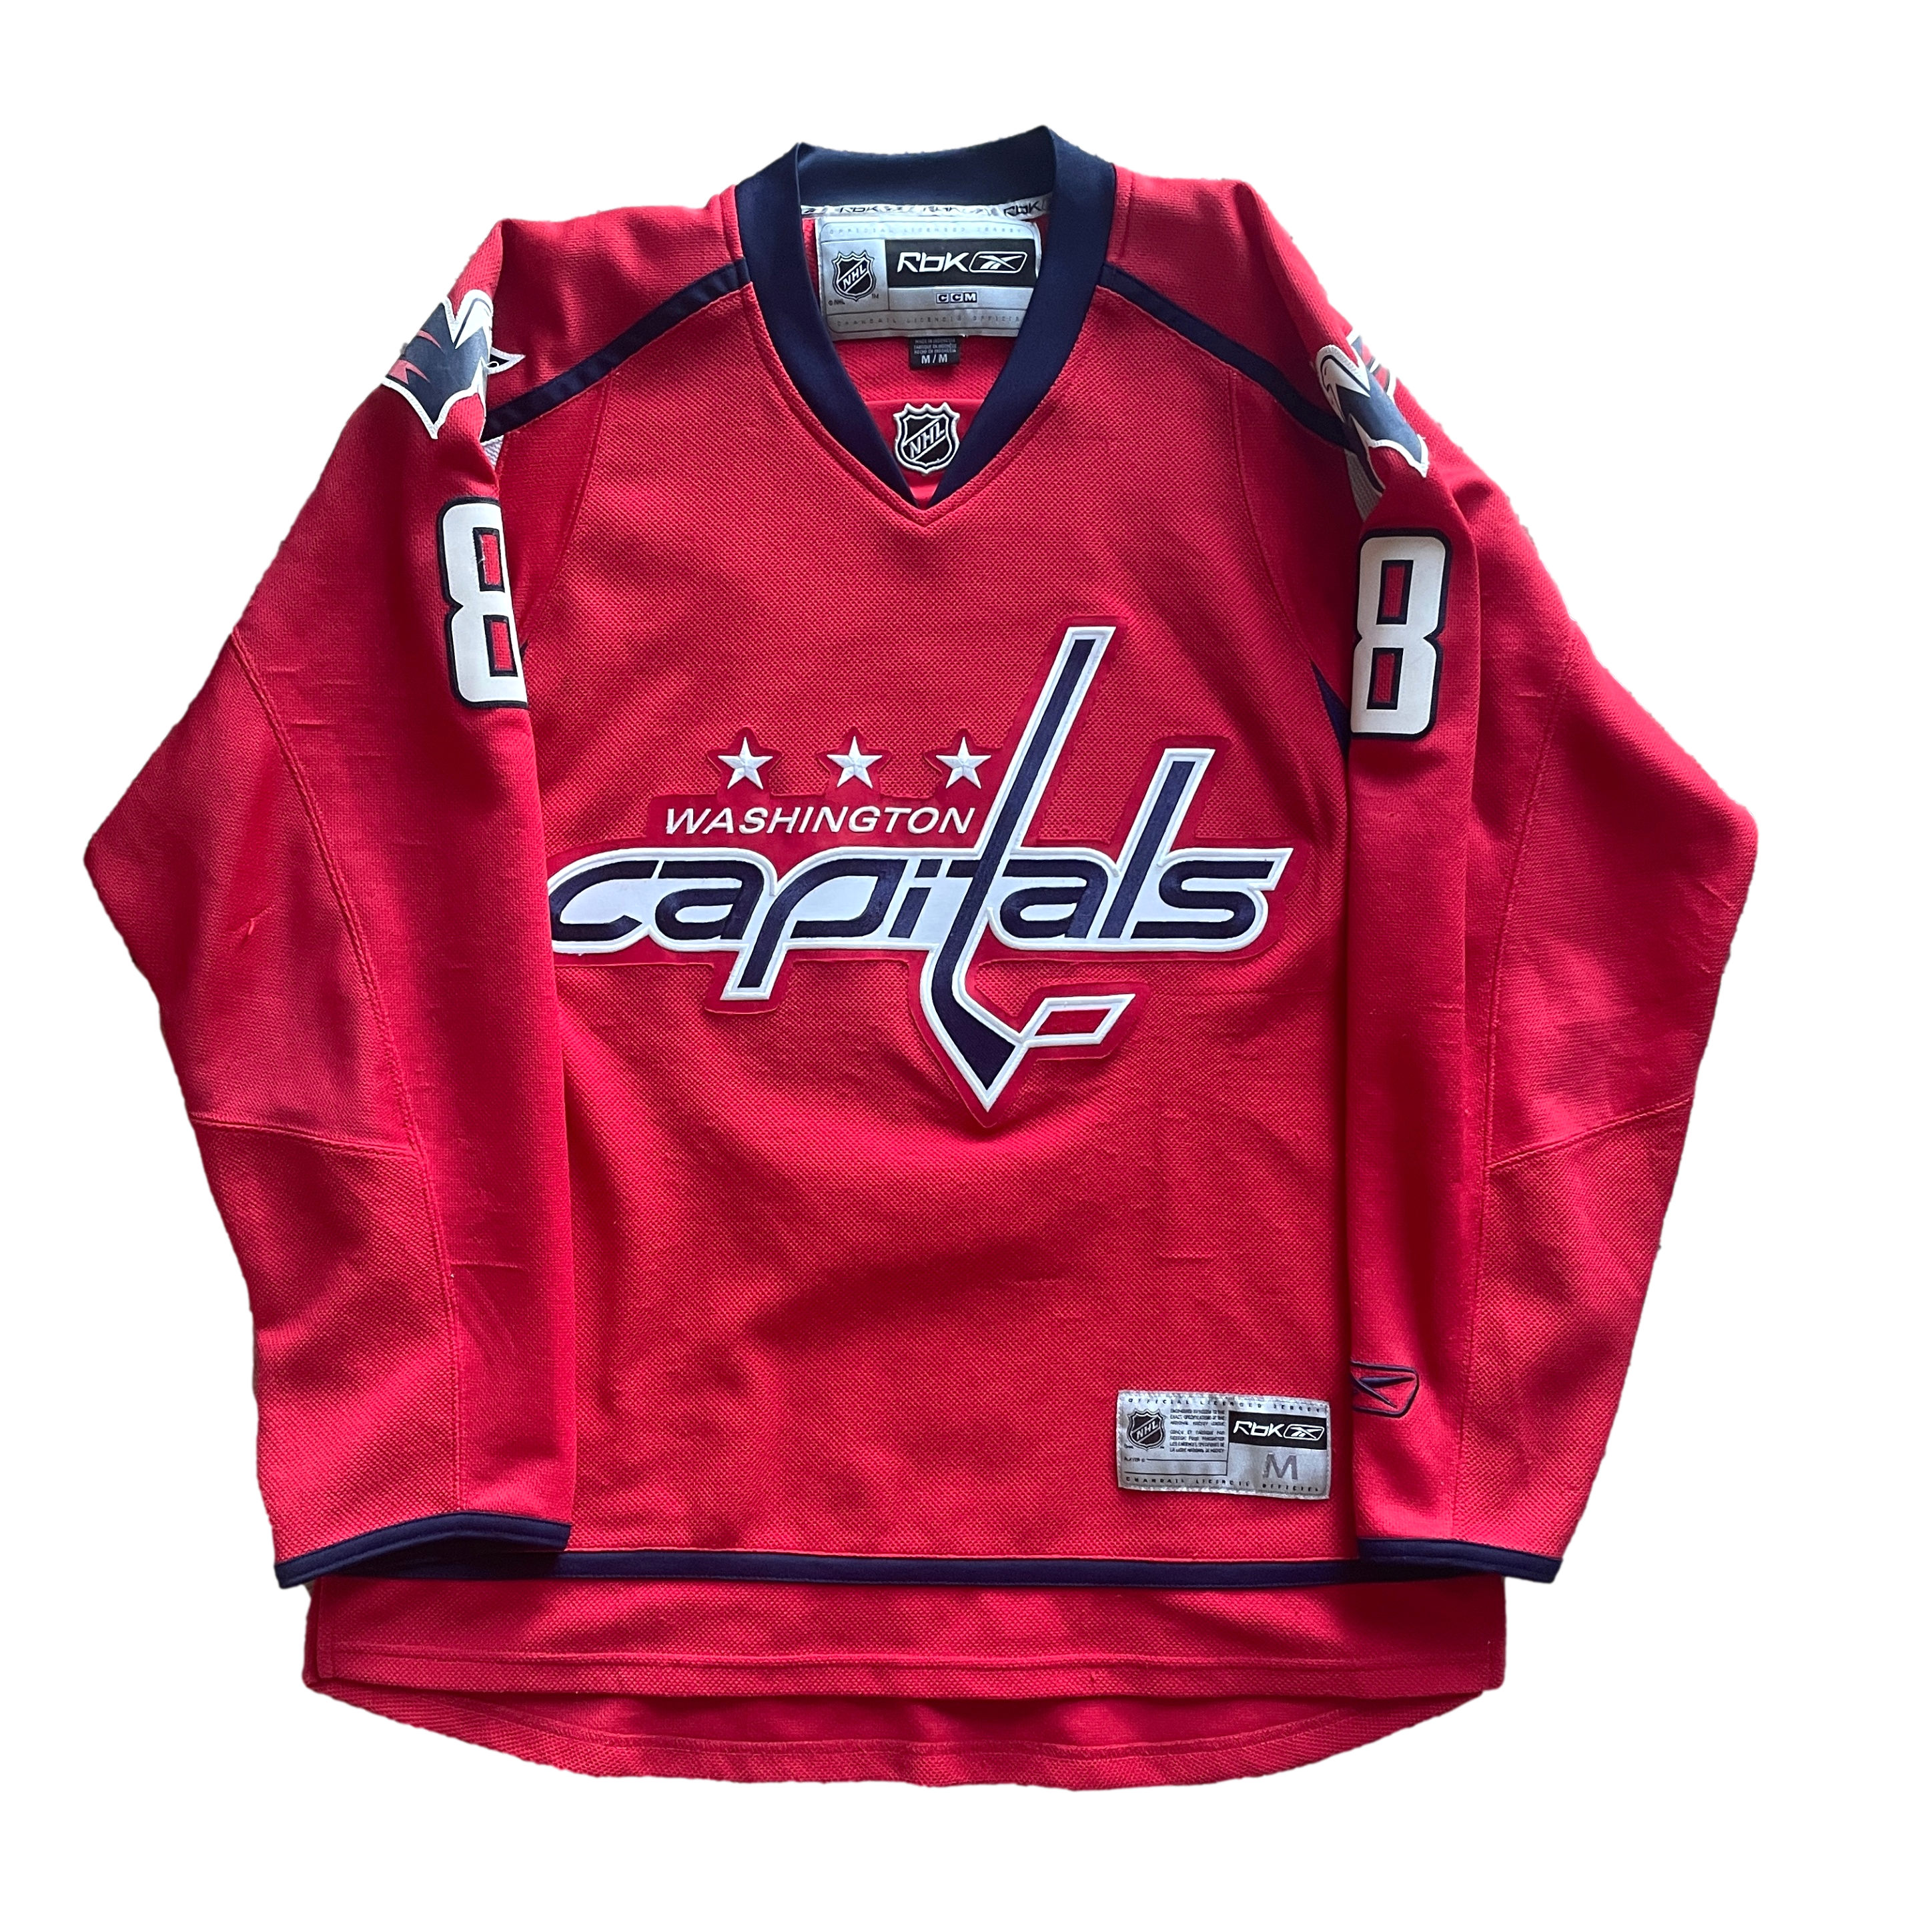 Washington Capitals NHL Hockey Jersey (M)